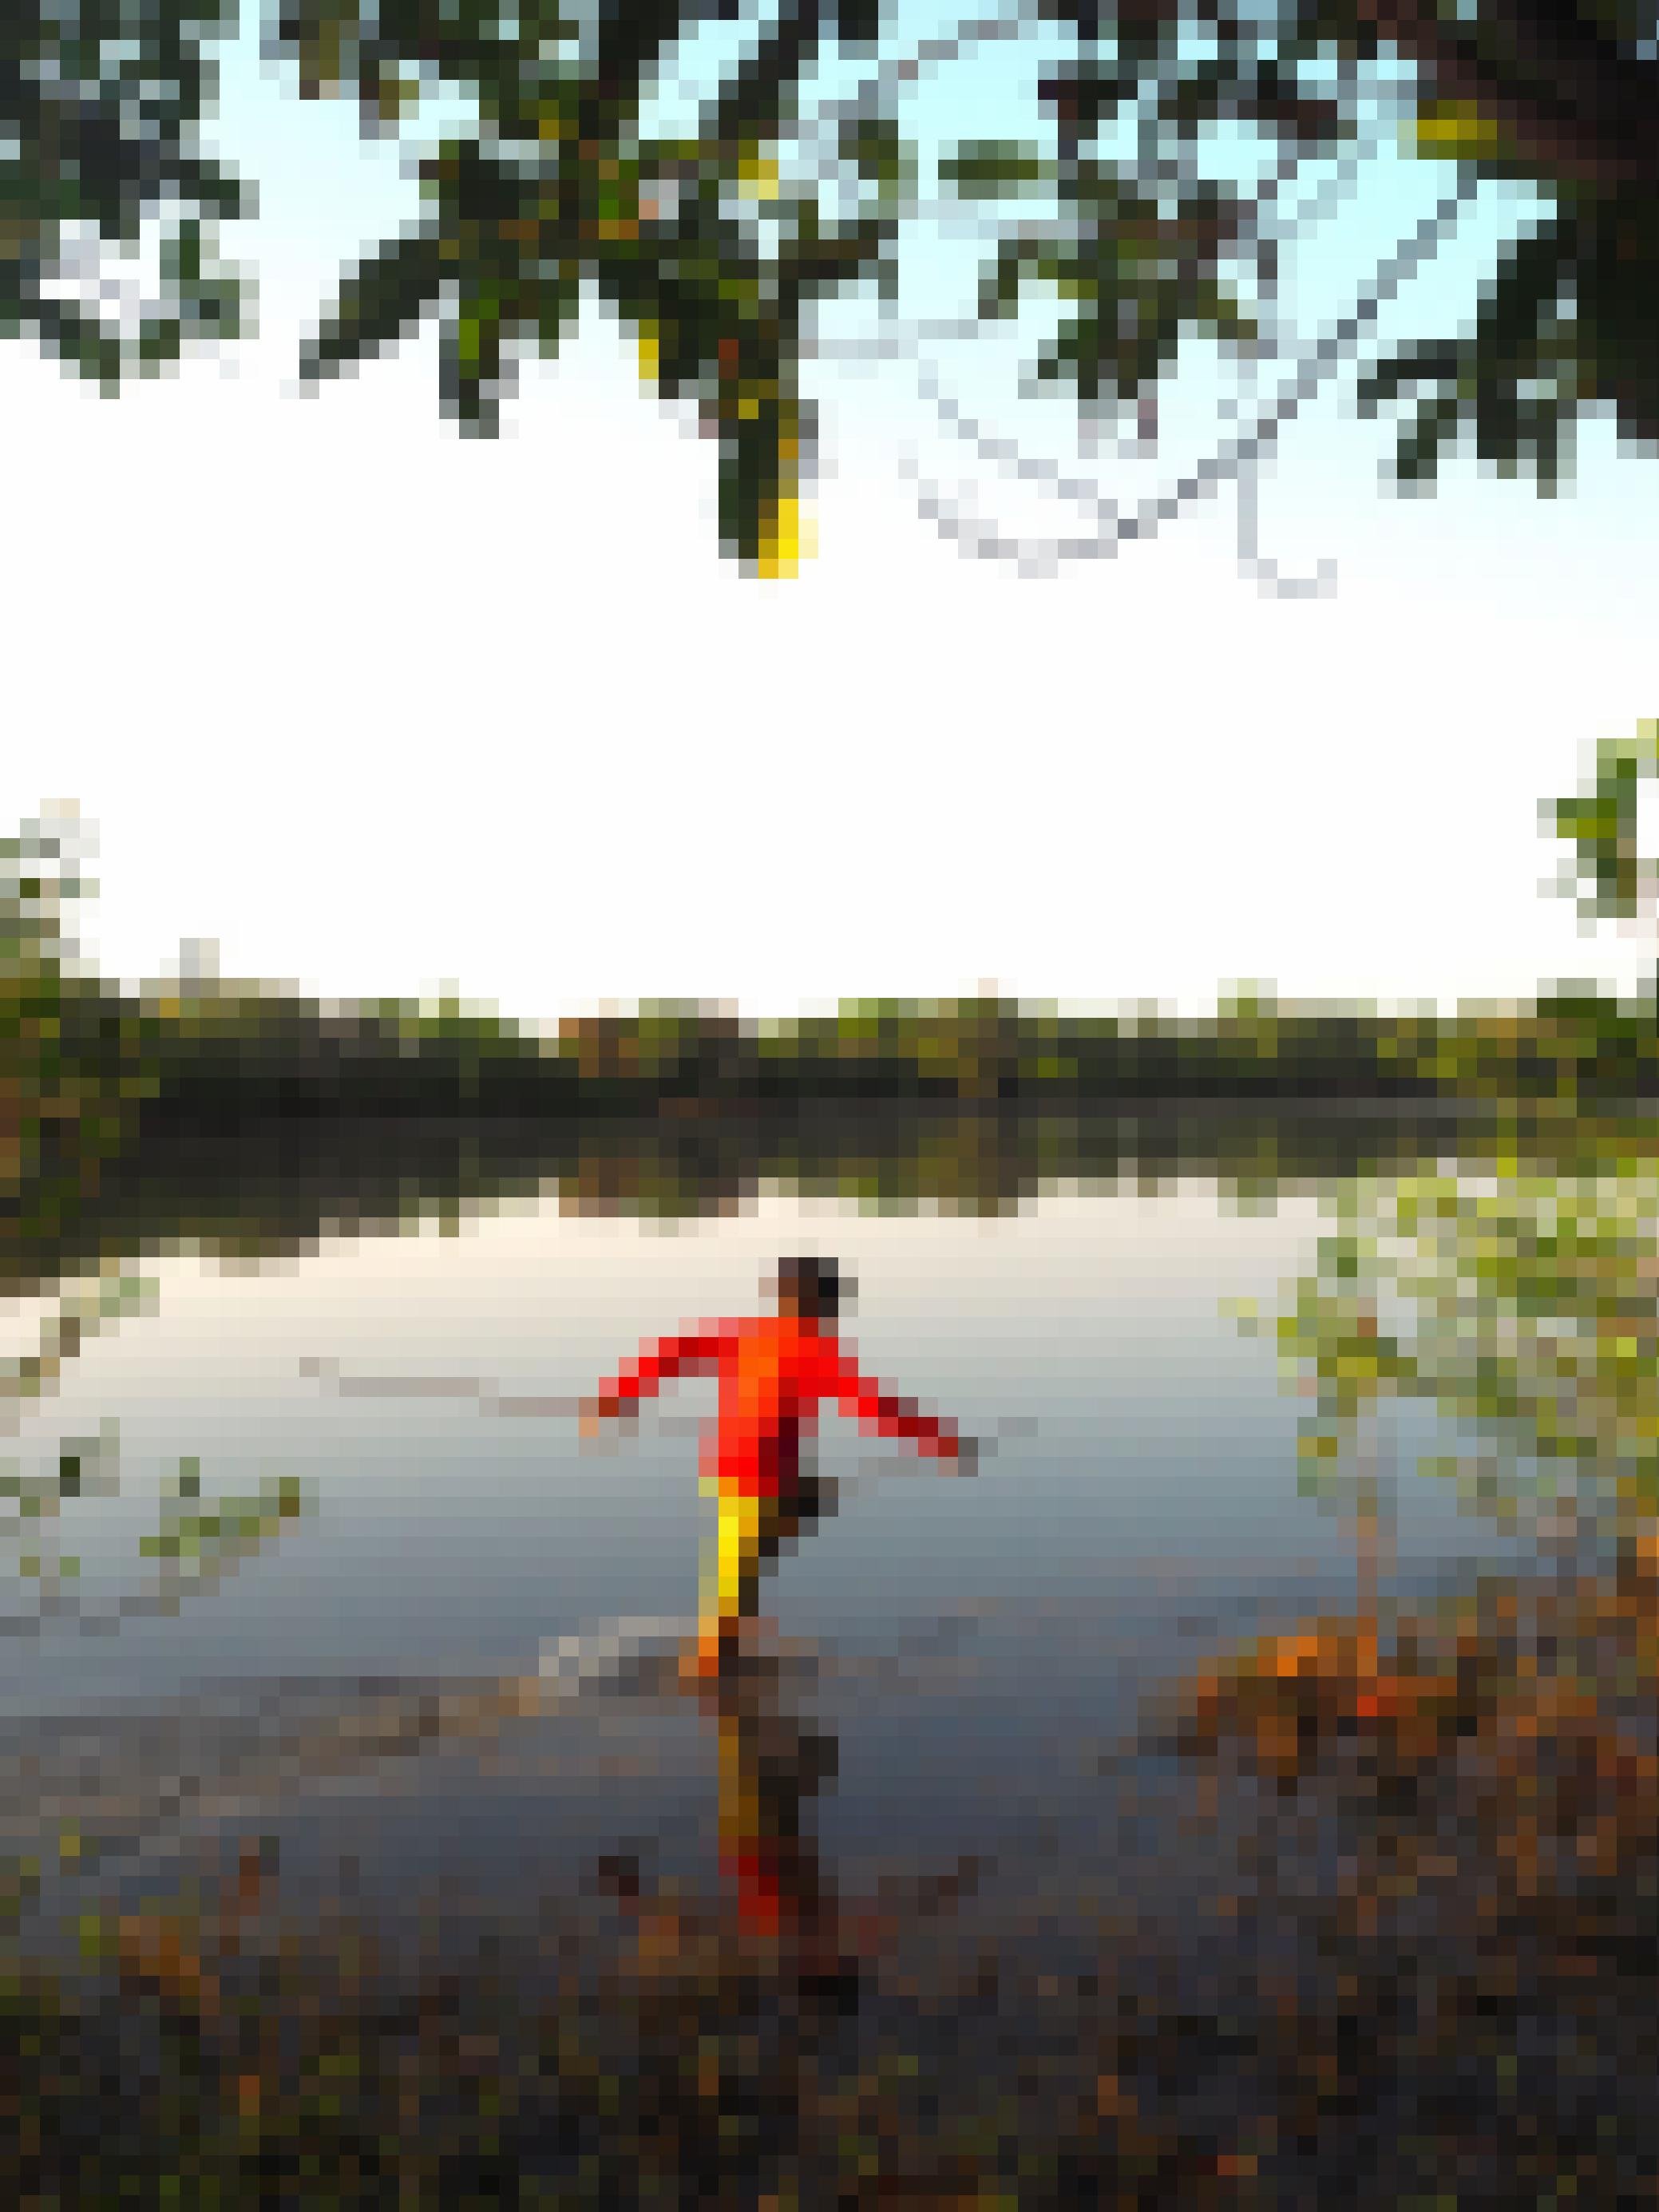 Ein Junge im roten Hemd watet durch die Lagune. Er ist mit angespitzten Stöcken bewaffnet, um die Fische aufzuspießen. e